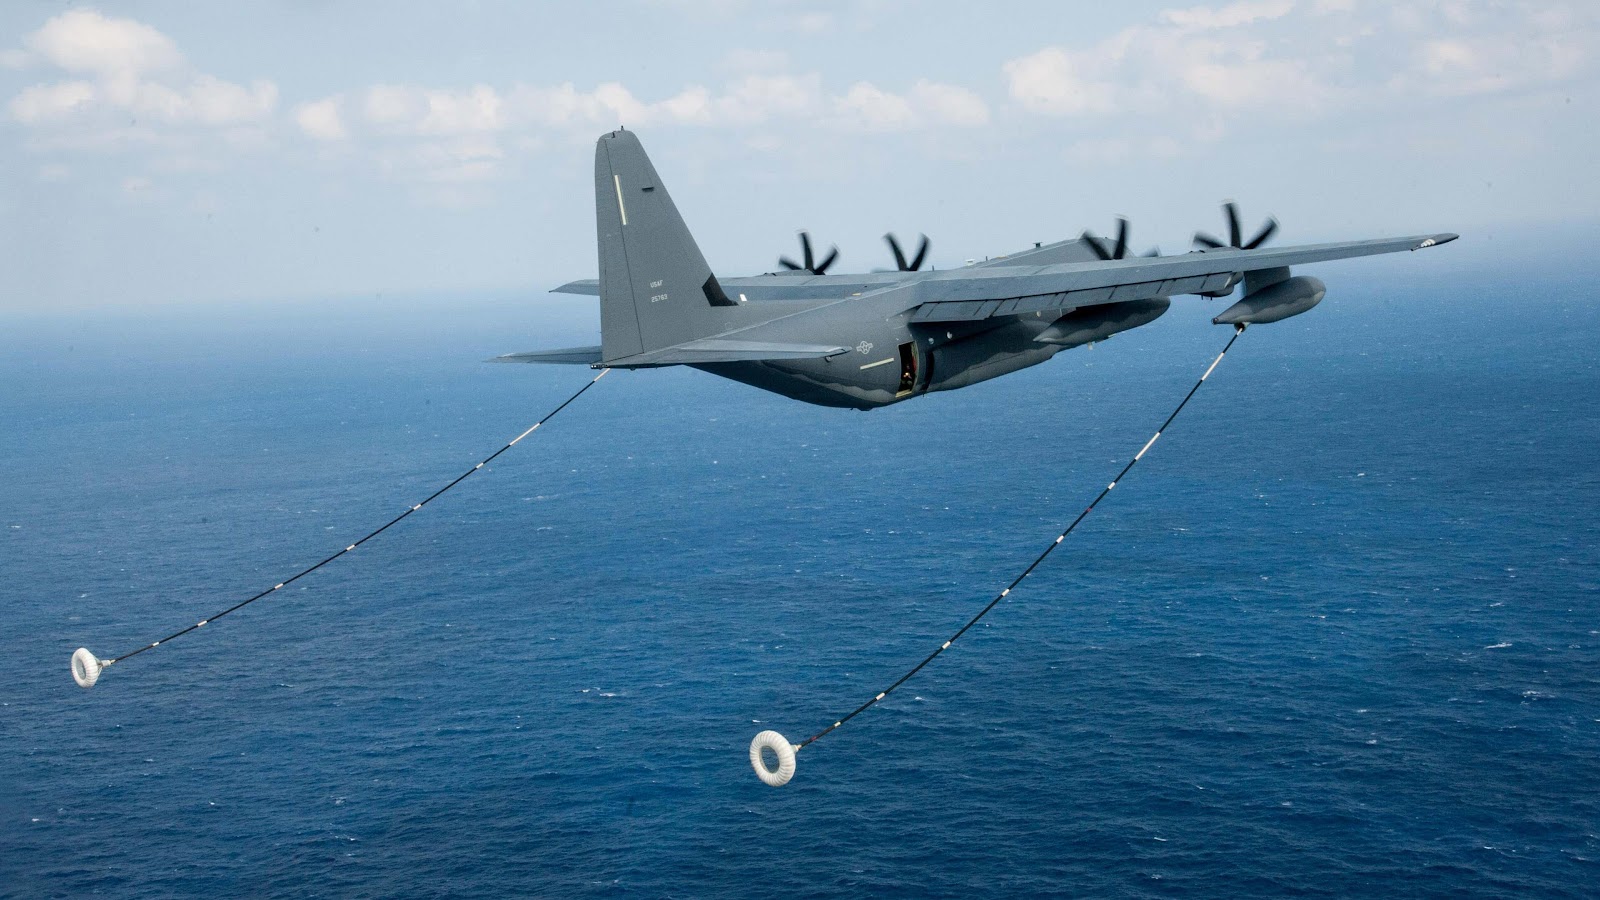 航空宇宙ビジネス短信t2 軍事航空 空軍 海軍 安全保障 地政学 Isr 新技術をお伝えします C 130が水上機に改装されアジア太平洋で活躍する日が来る ハーキュリーズの水陸両用型構想を特殊部隊司令部が検討中